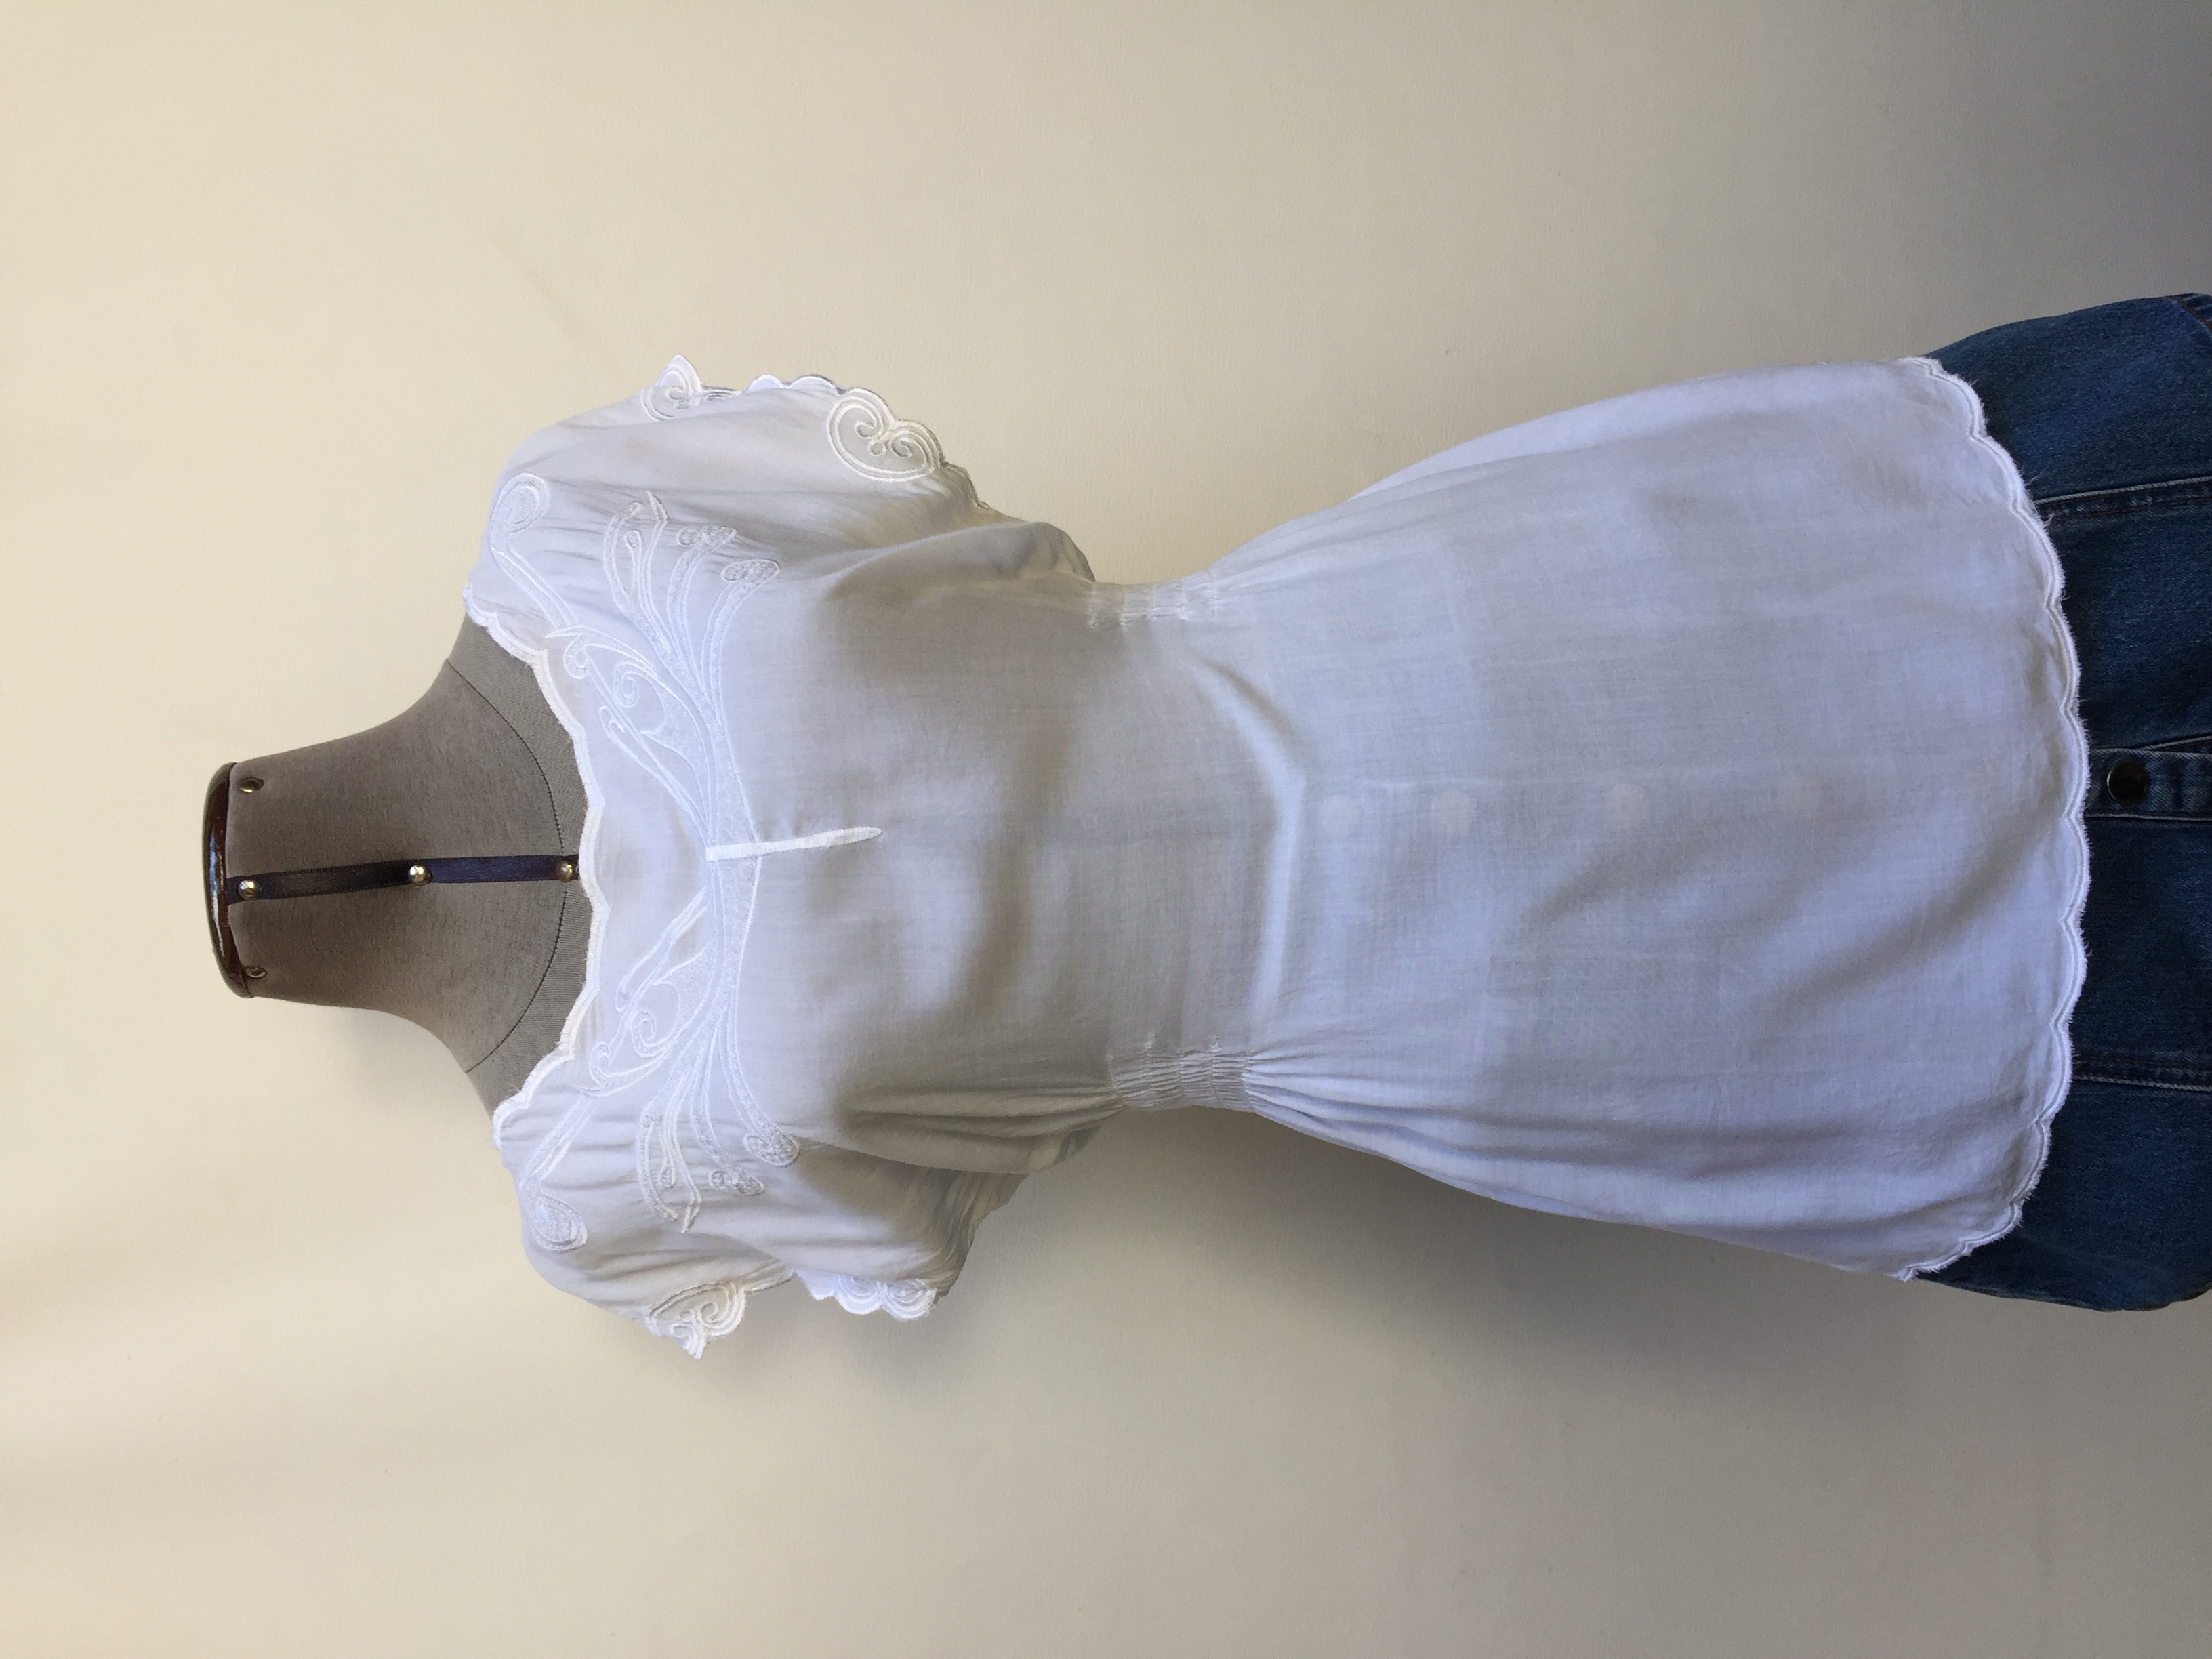 Blusa Basement blanca con bordado en el cuello y mangas, panal de abeja laterales en la cintura. Suelto y fresco!
Talla S (puede ser M)